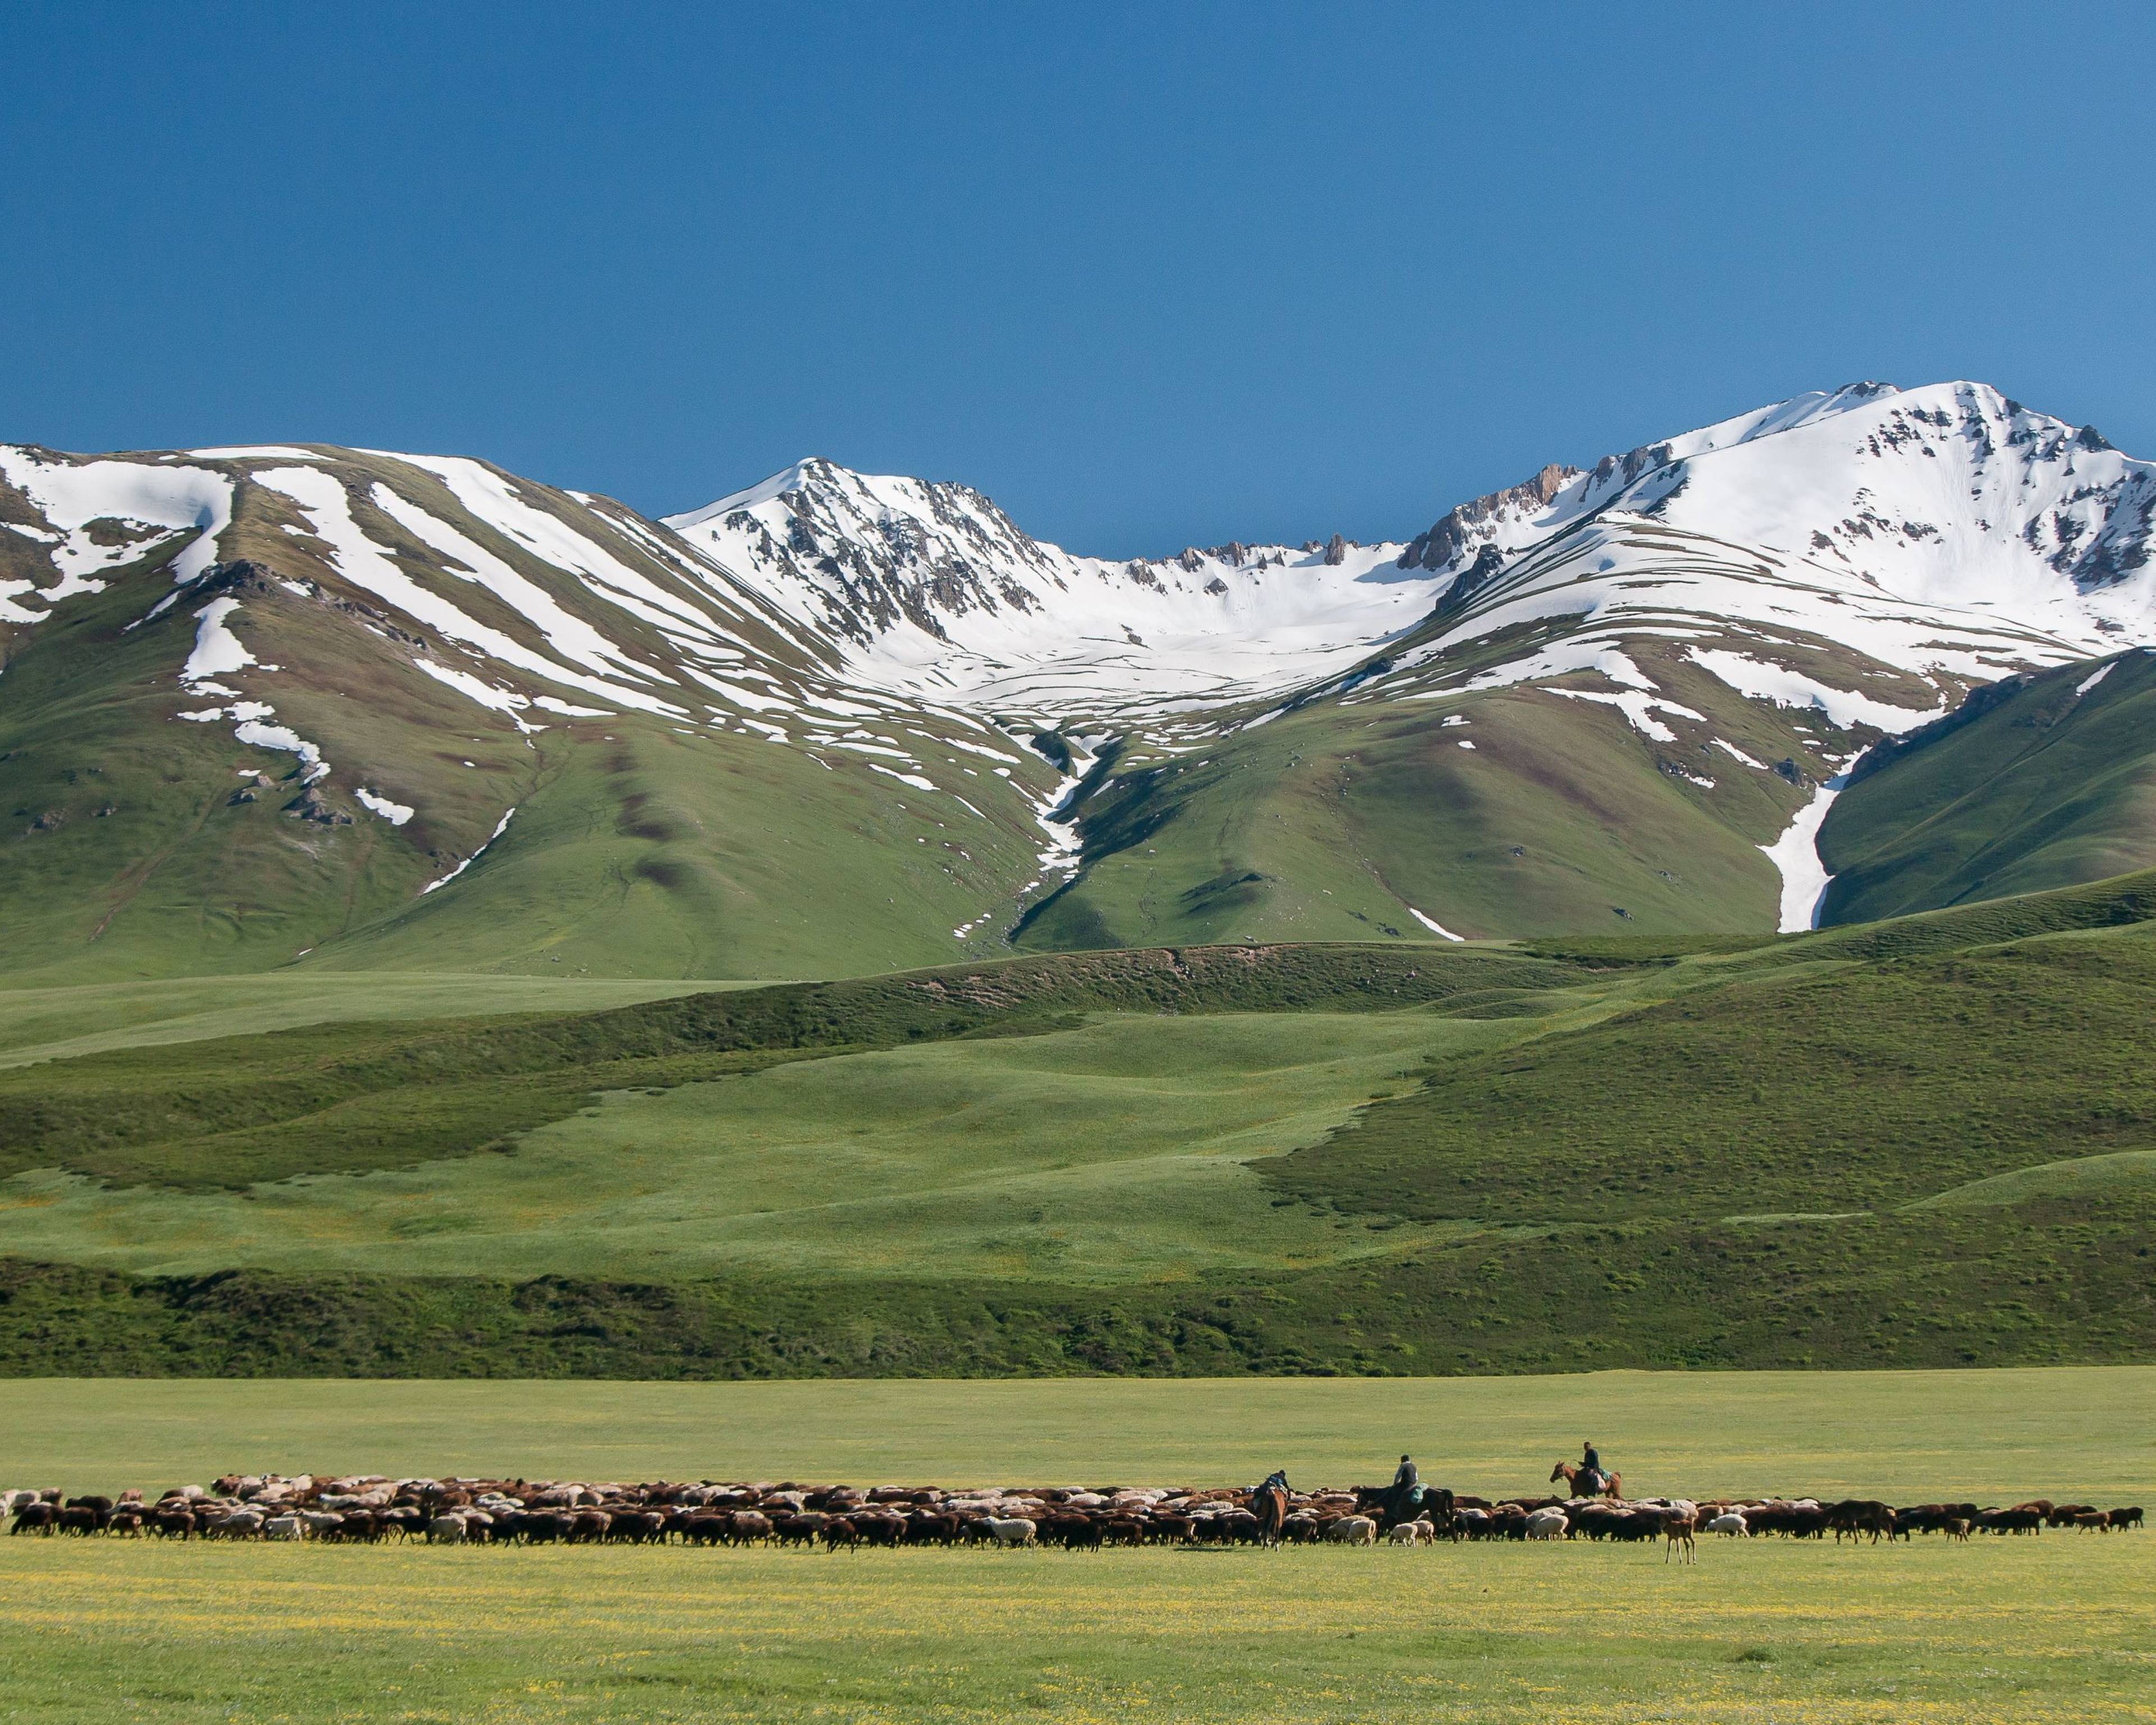 Natur und Kultur im Herzen Zentralasiens